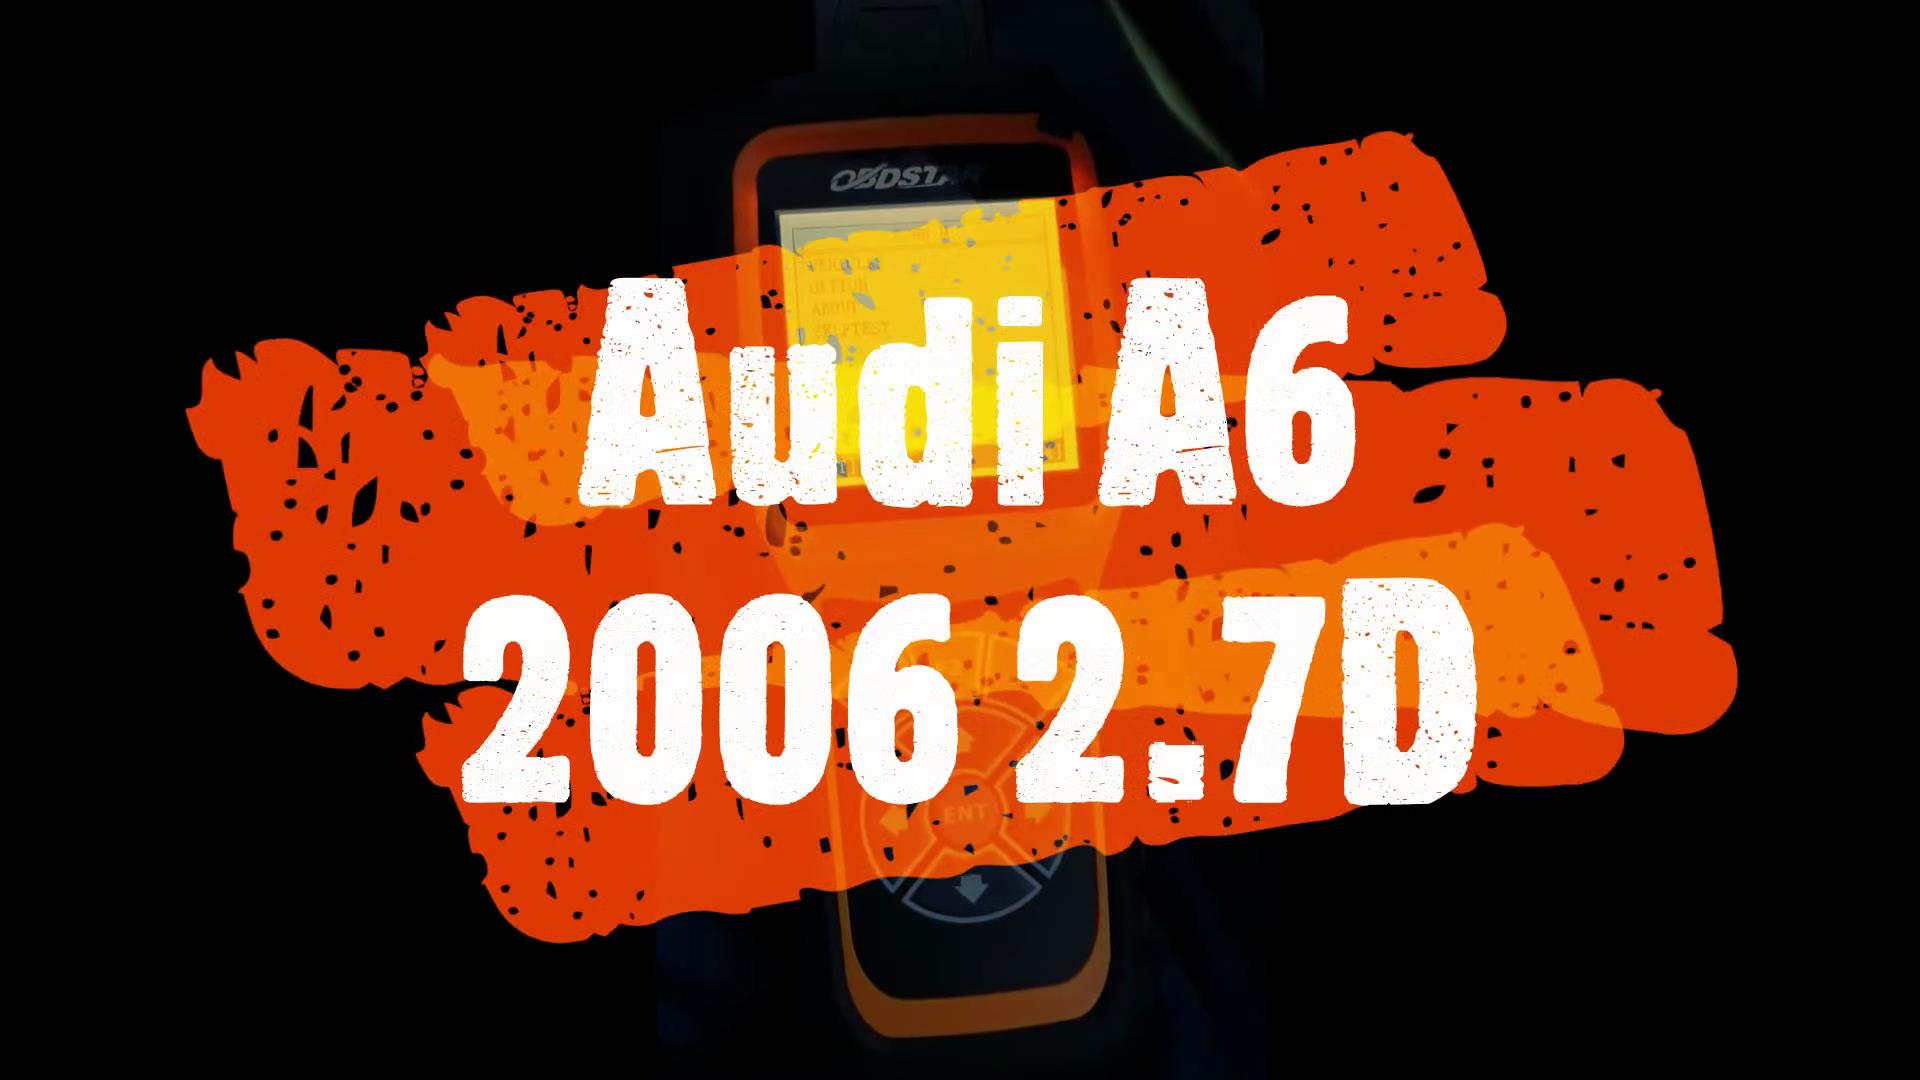 Audi-A6-2006-2.7D-Mileage-Correction-via-Obdstar-X300M-1